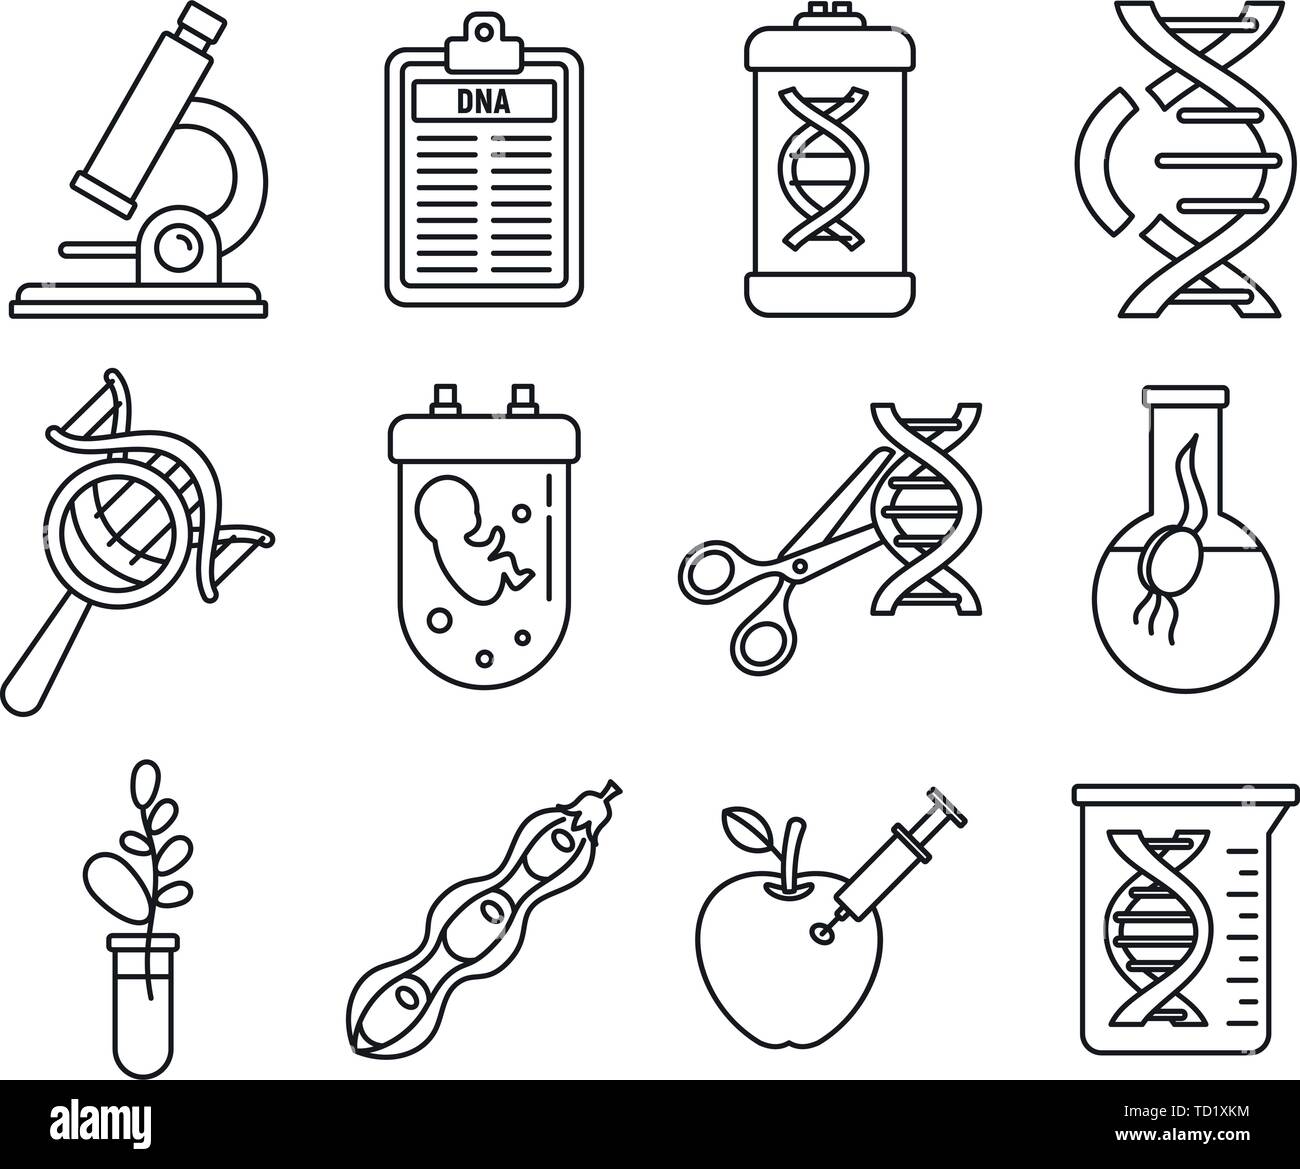 Iconos de la ingeniería genética de ADN. Esquema establecido de ingeniería  genética ADN vector iconos para diseño web aislado sobre fondo blanco  Imagen Vector de stock - Alamy